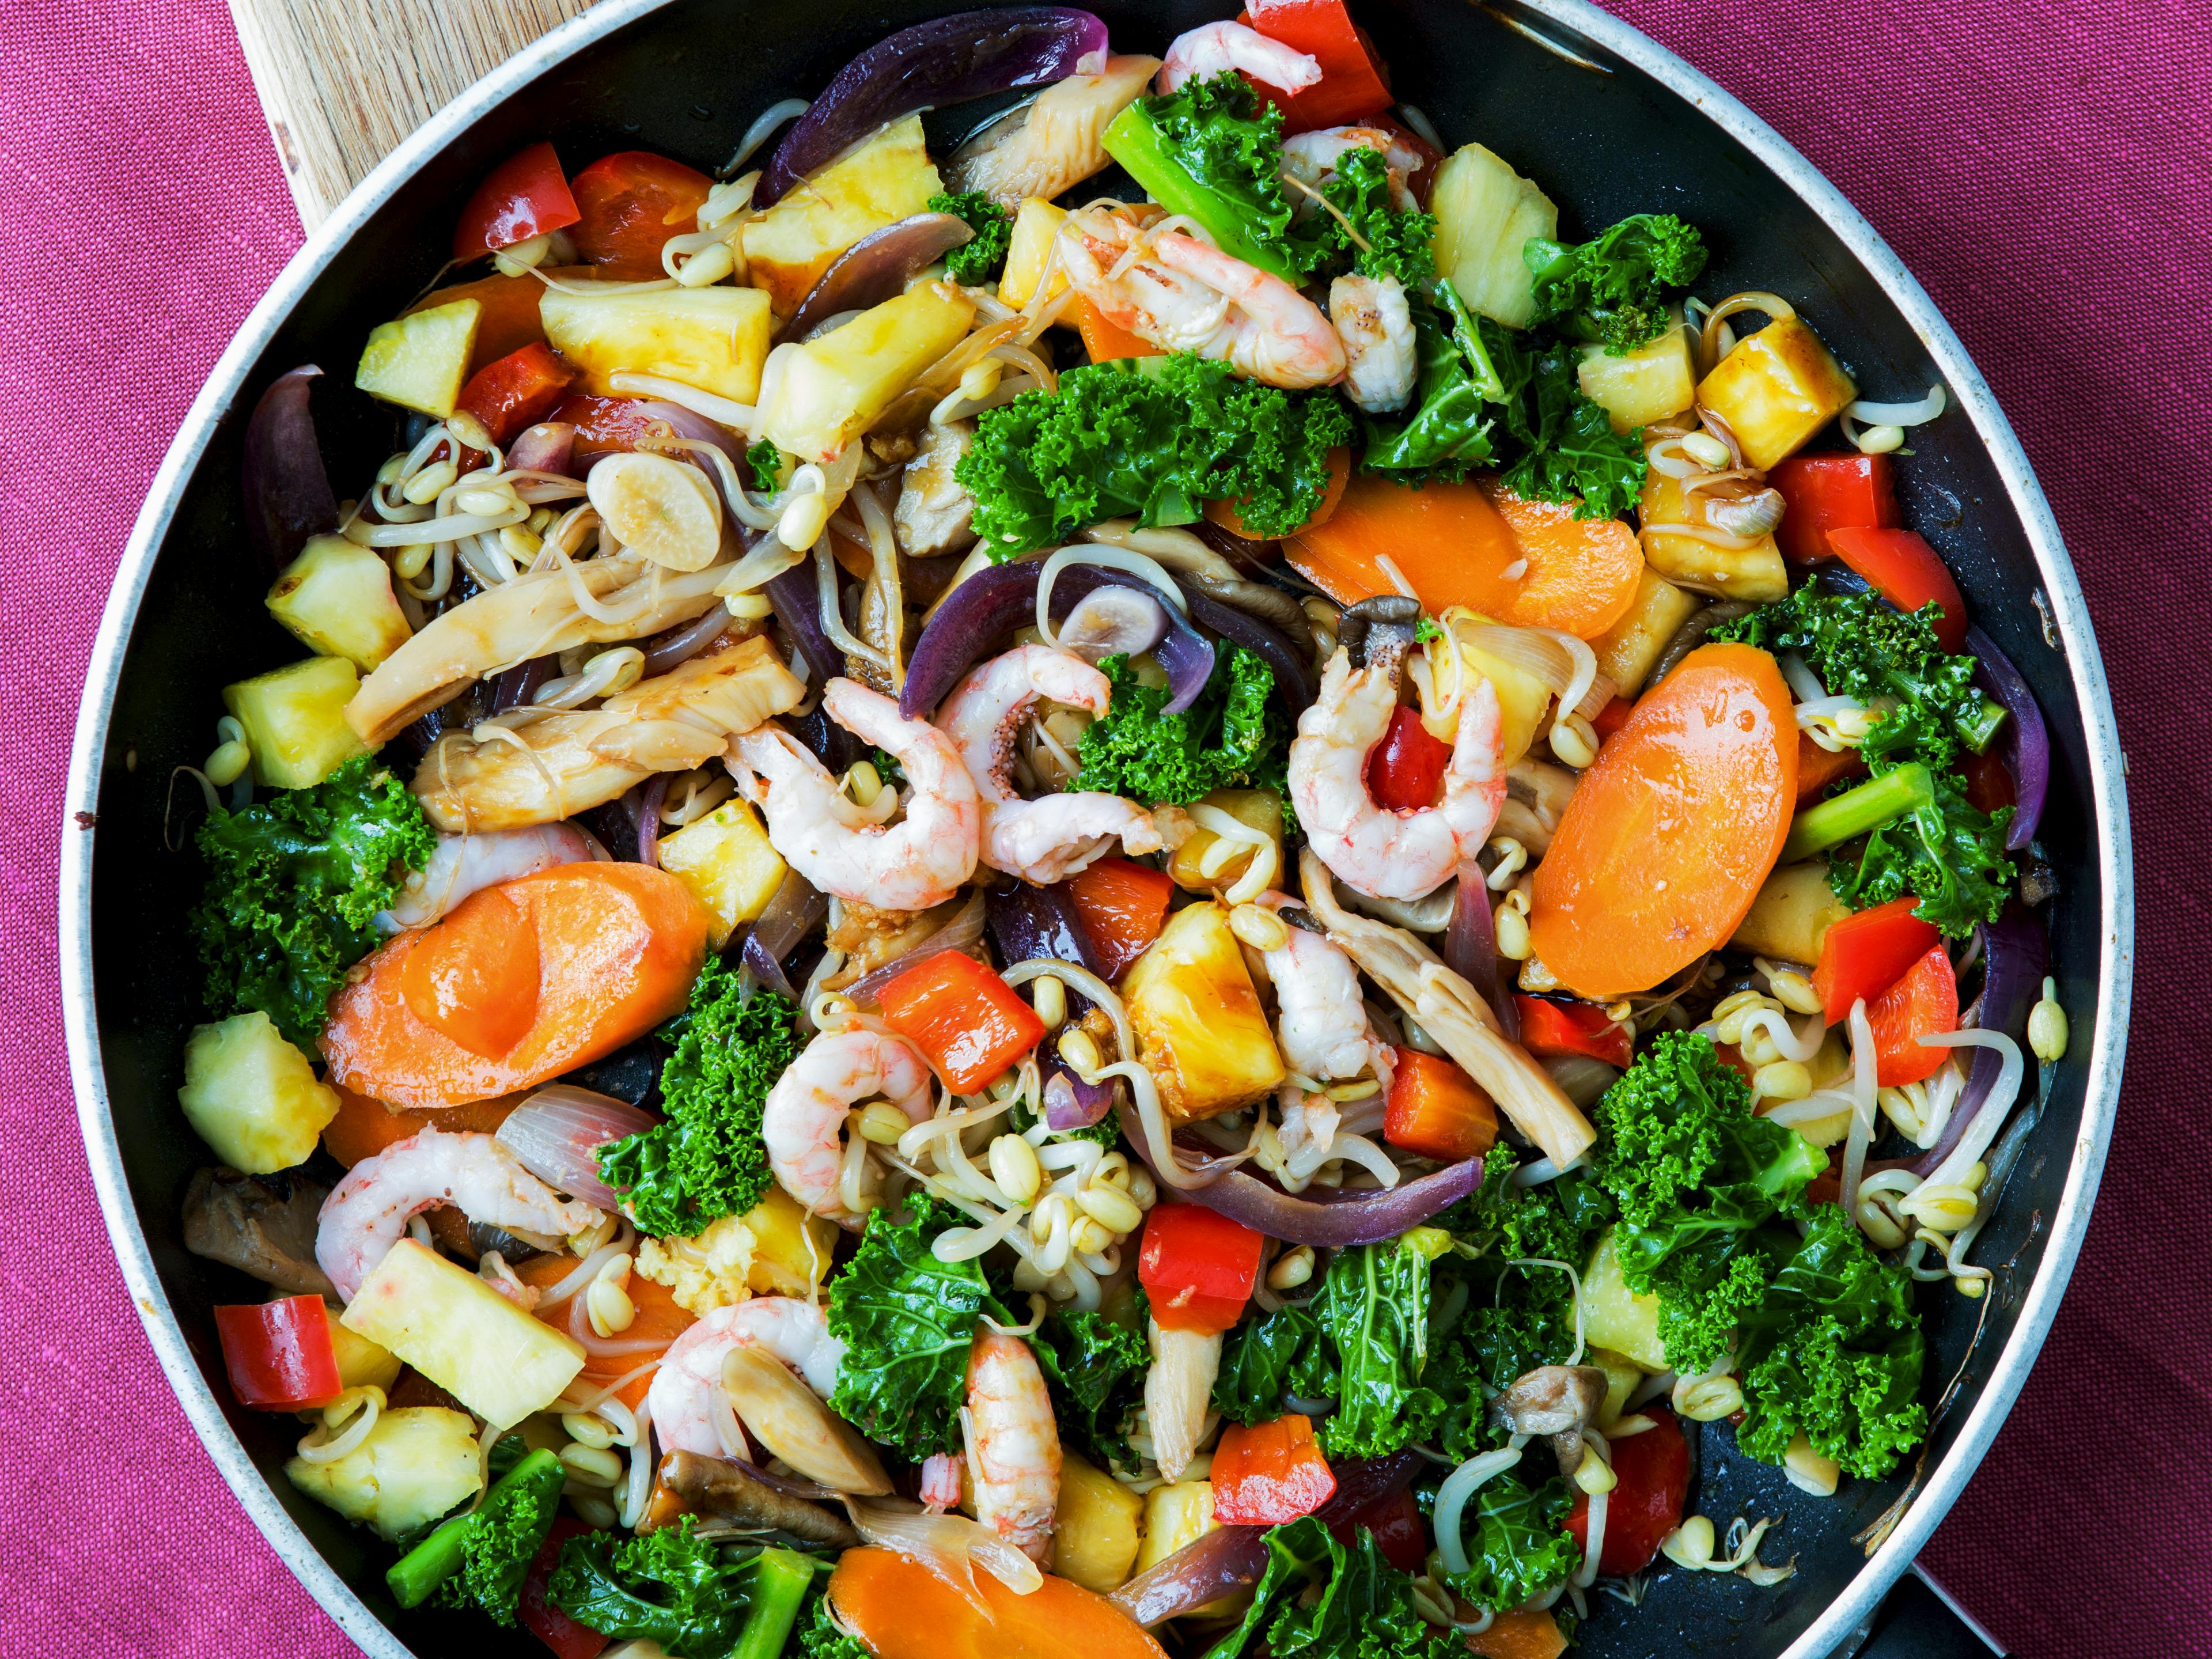 Indbydende ret tilberedt i wok med masser af grøntsager, rejer og ananas